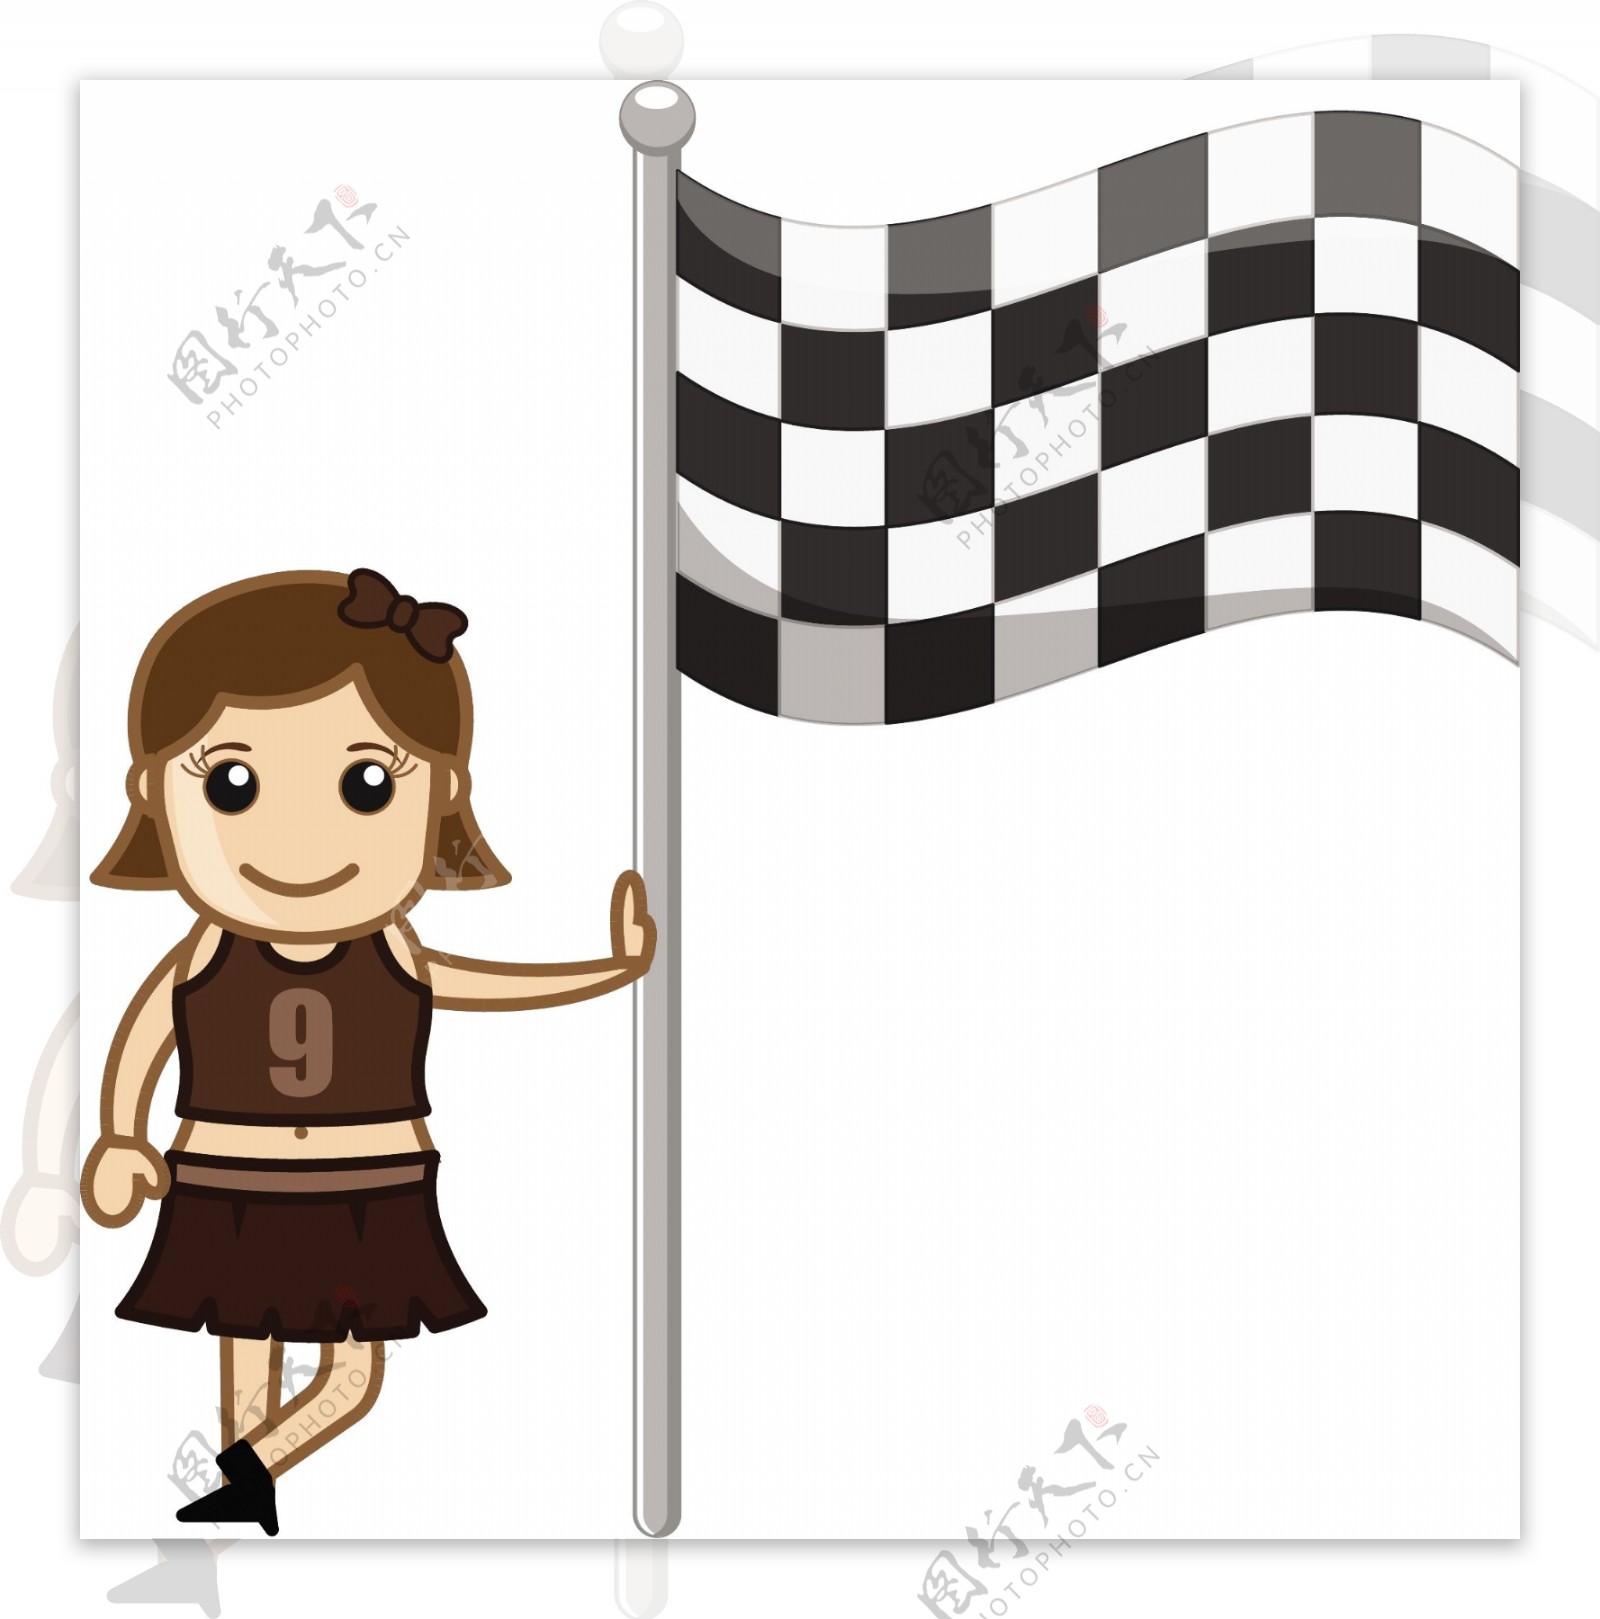 啦啦队女孩站在赛车的旗帜